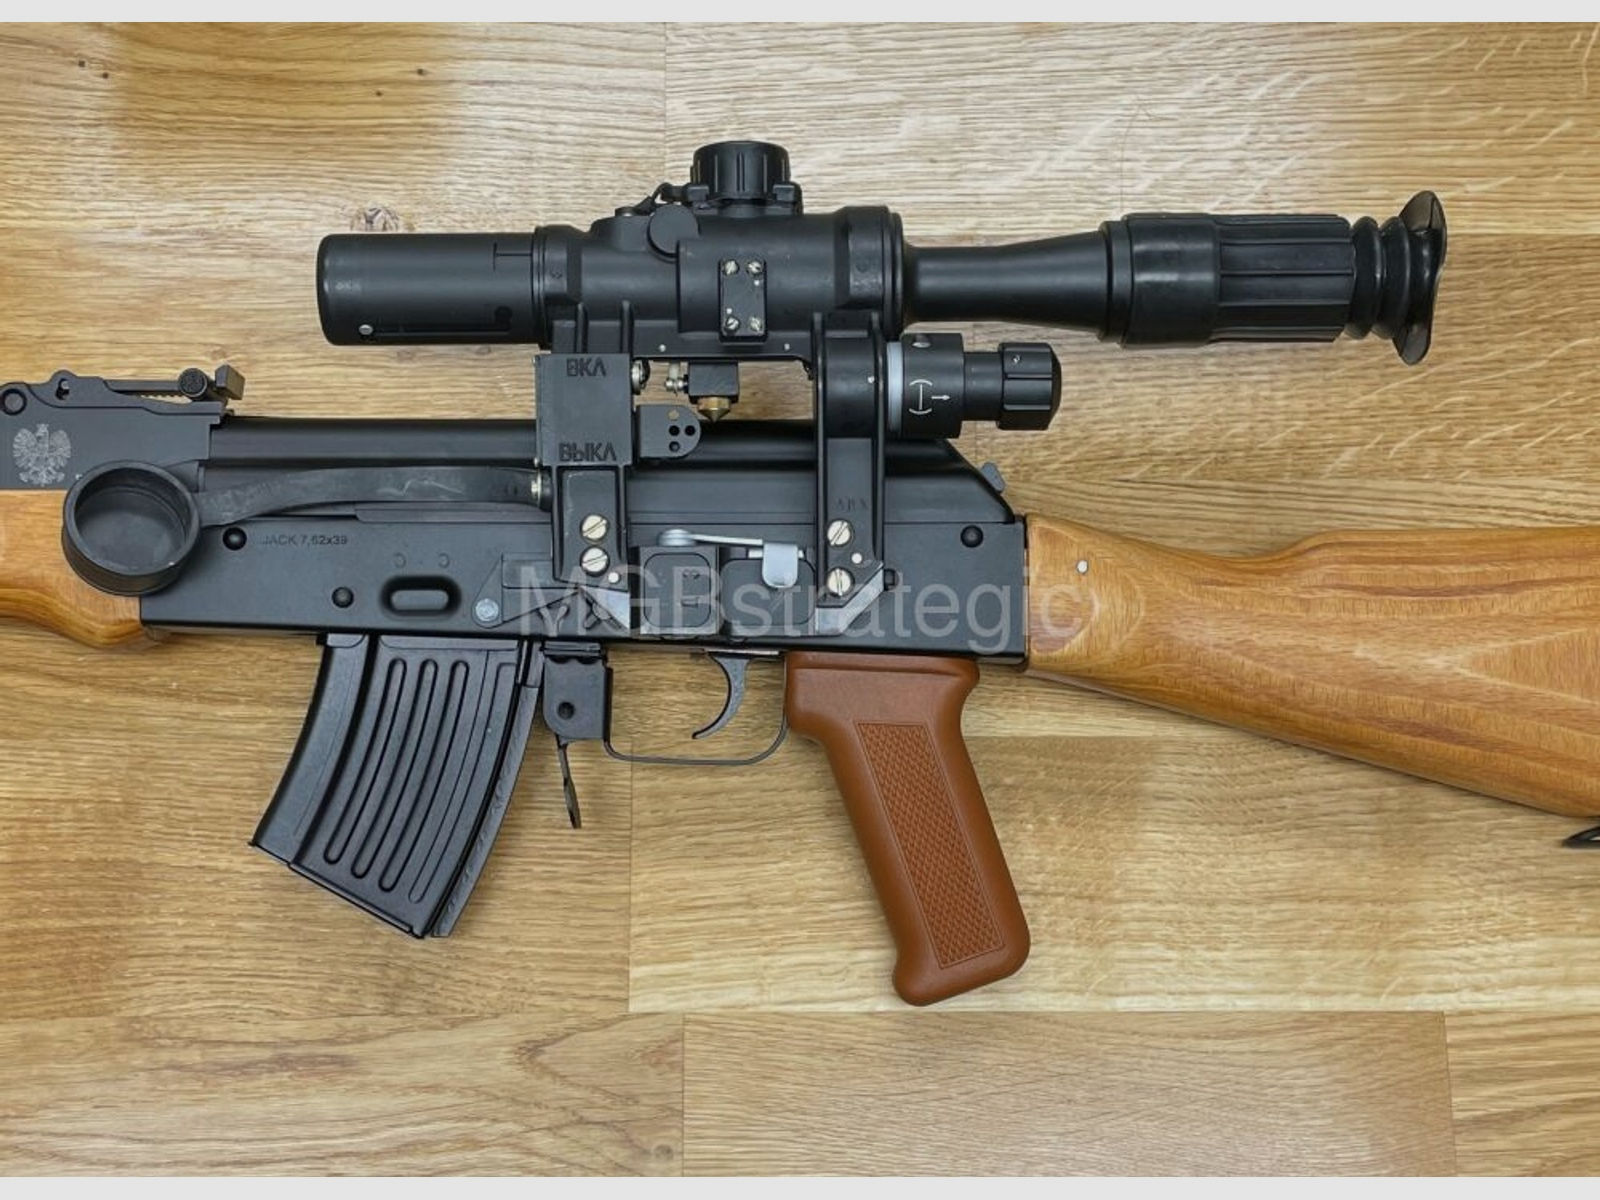 WBP Jack - halbautom. Büchse 7,62x39 - System AKM AK47 AK74	 Schichtholzschäftung - Bajonett kann montiert werden - Made in Poland - Neuheit!